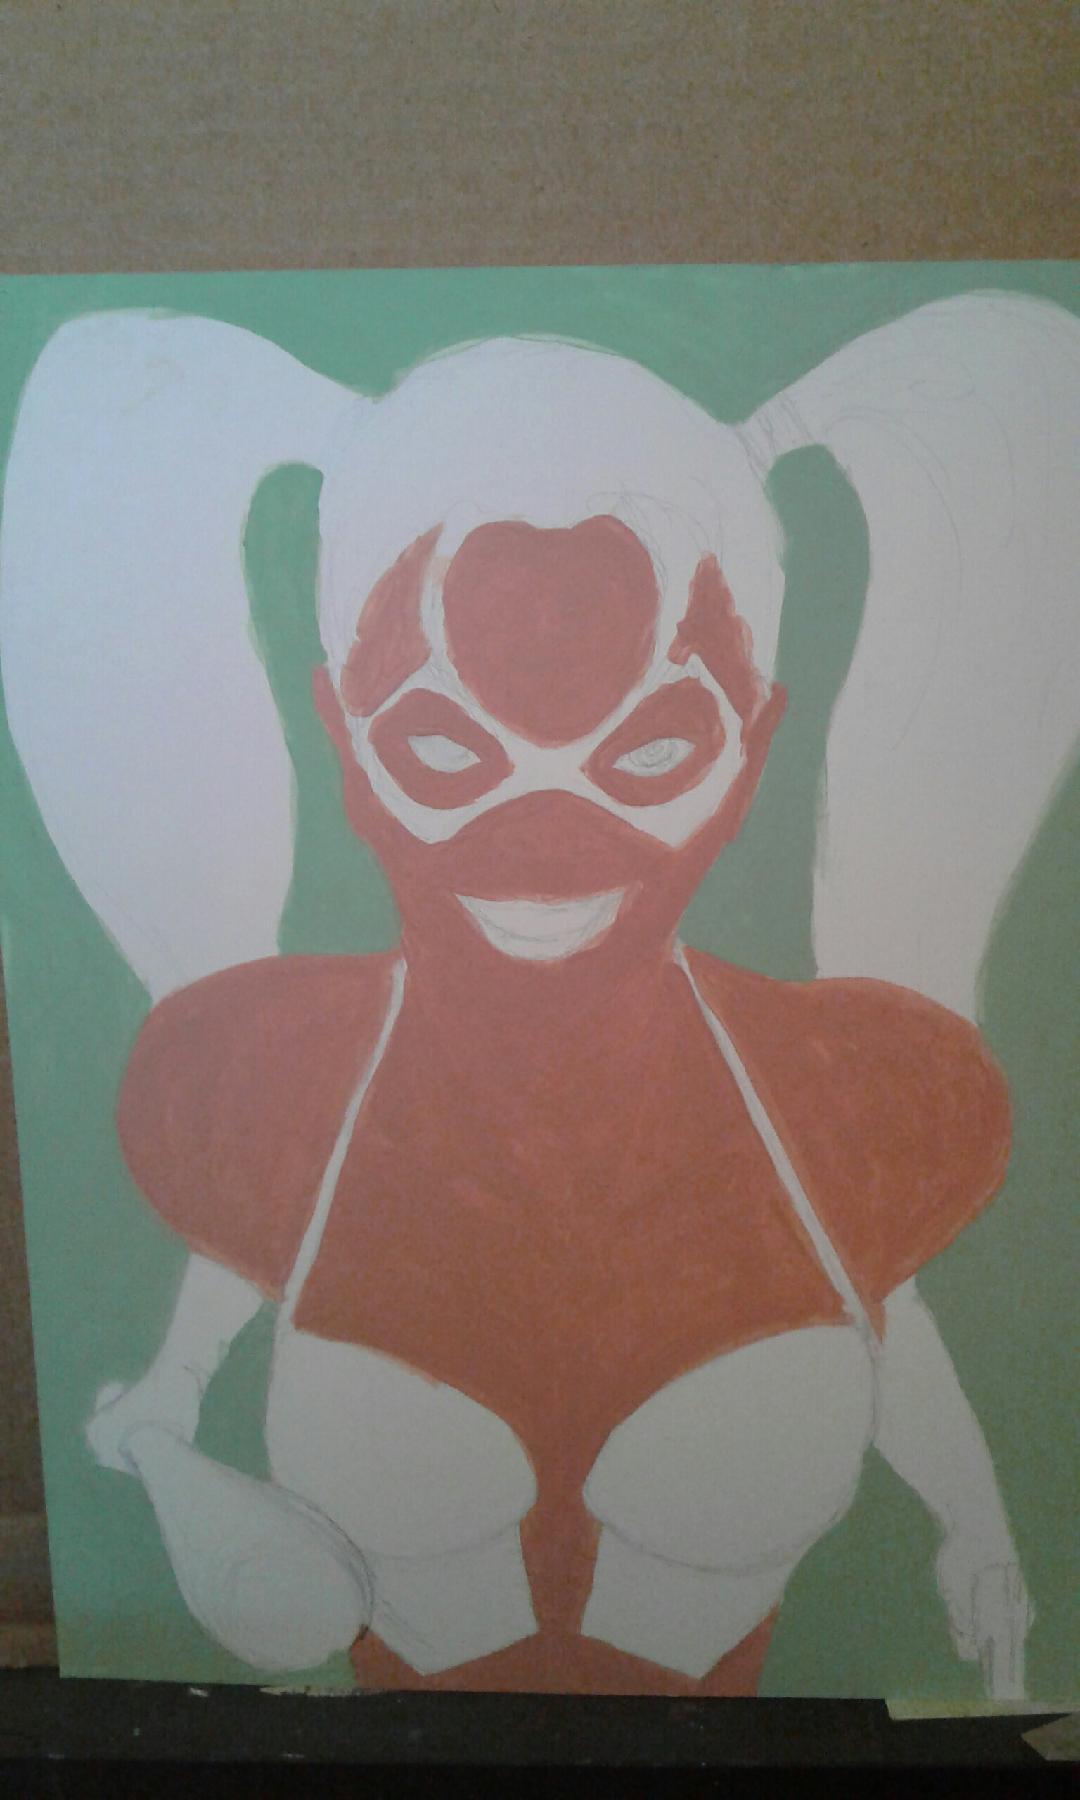 Harley Quinn artwork, still in its infancy 